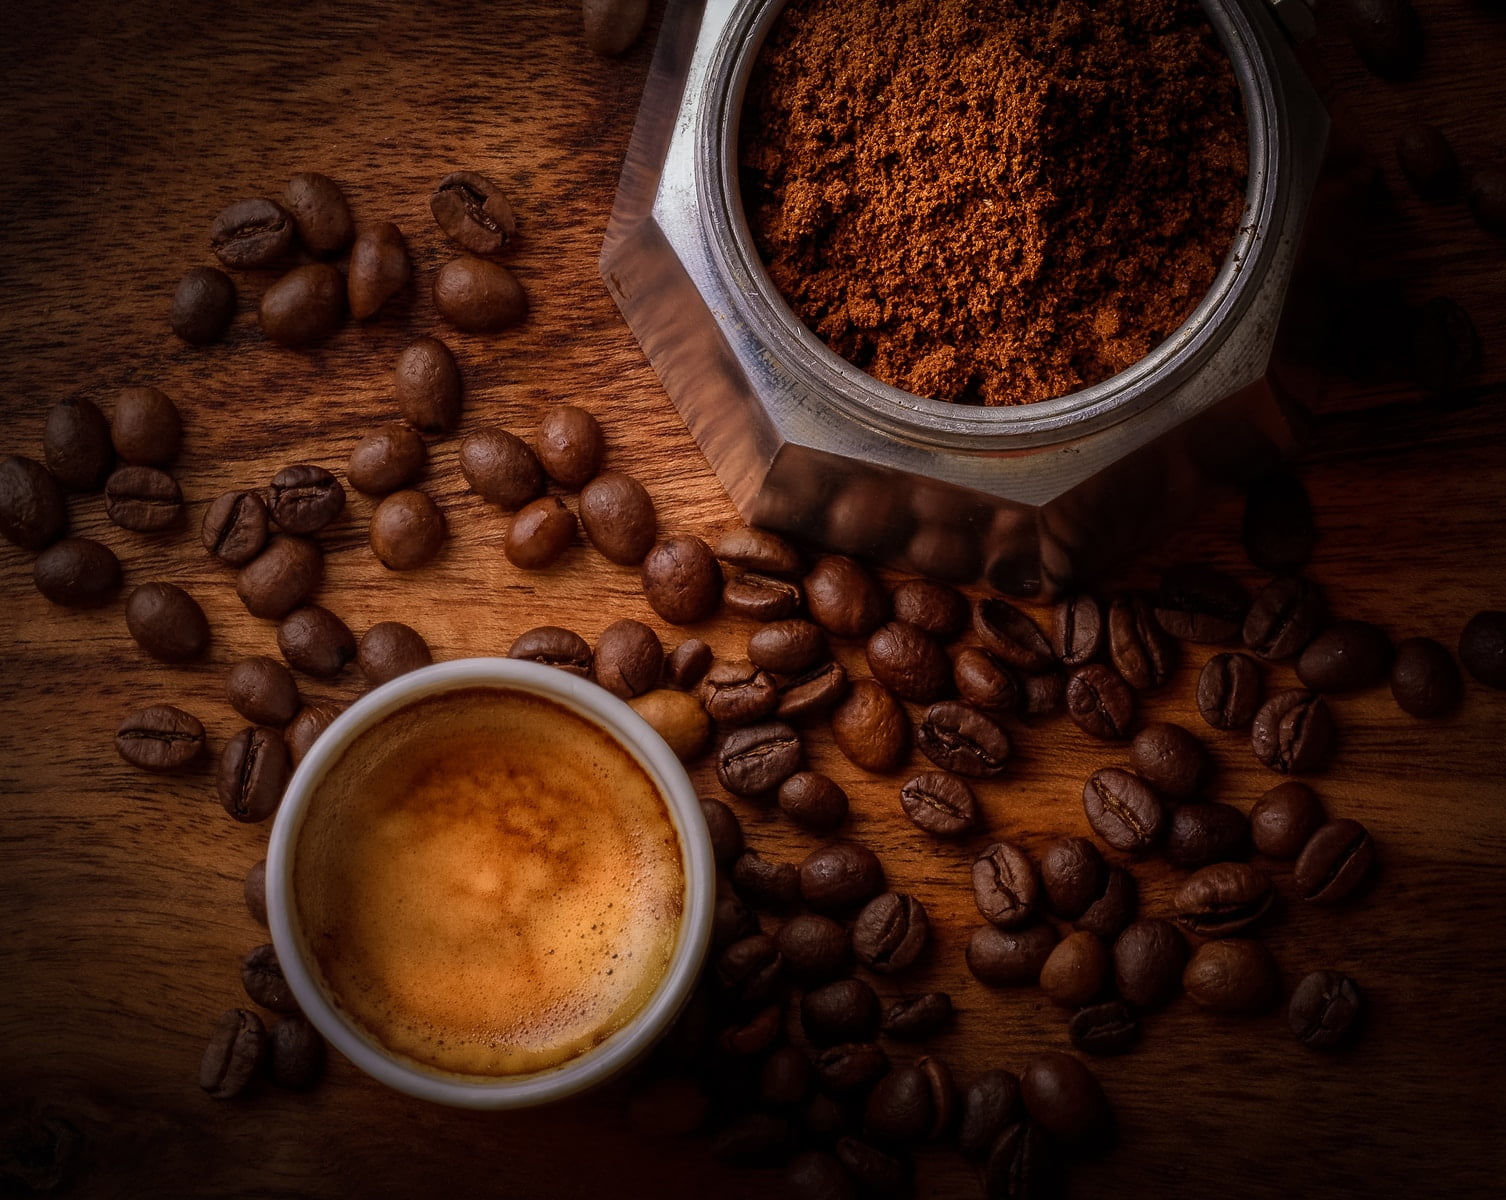 9 dyraste kaffesorterna i världen